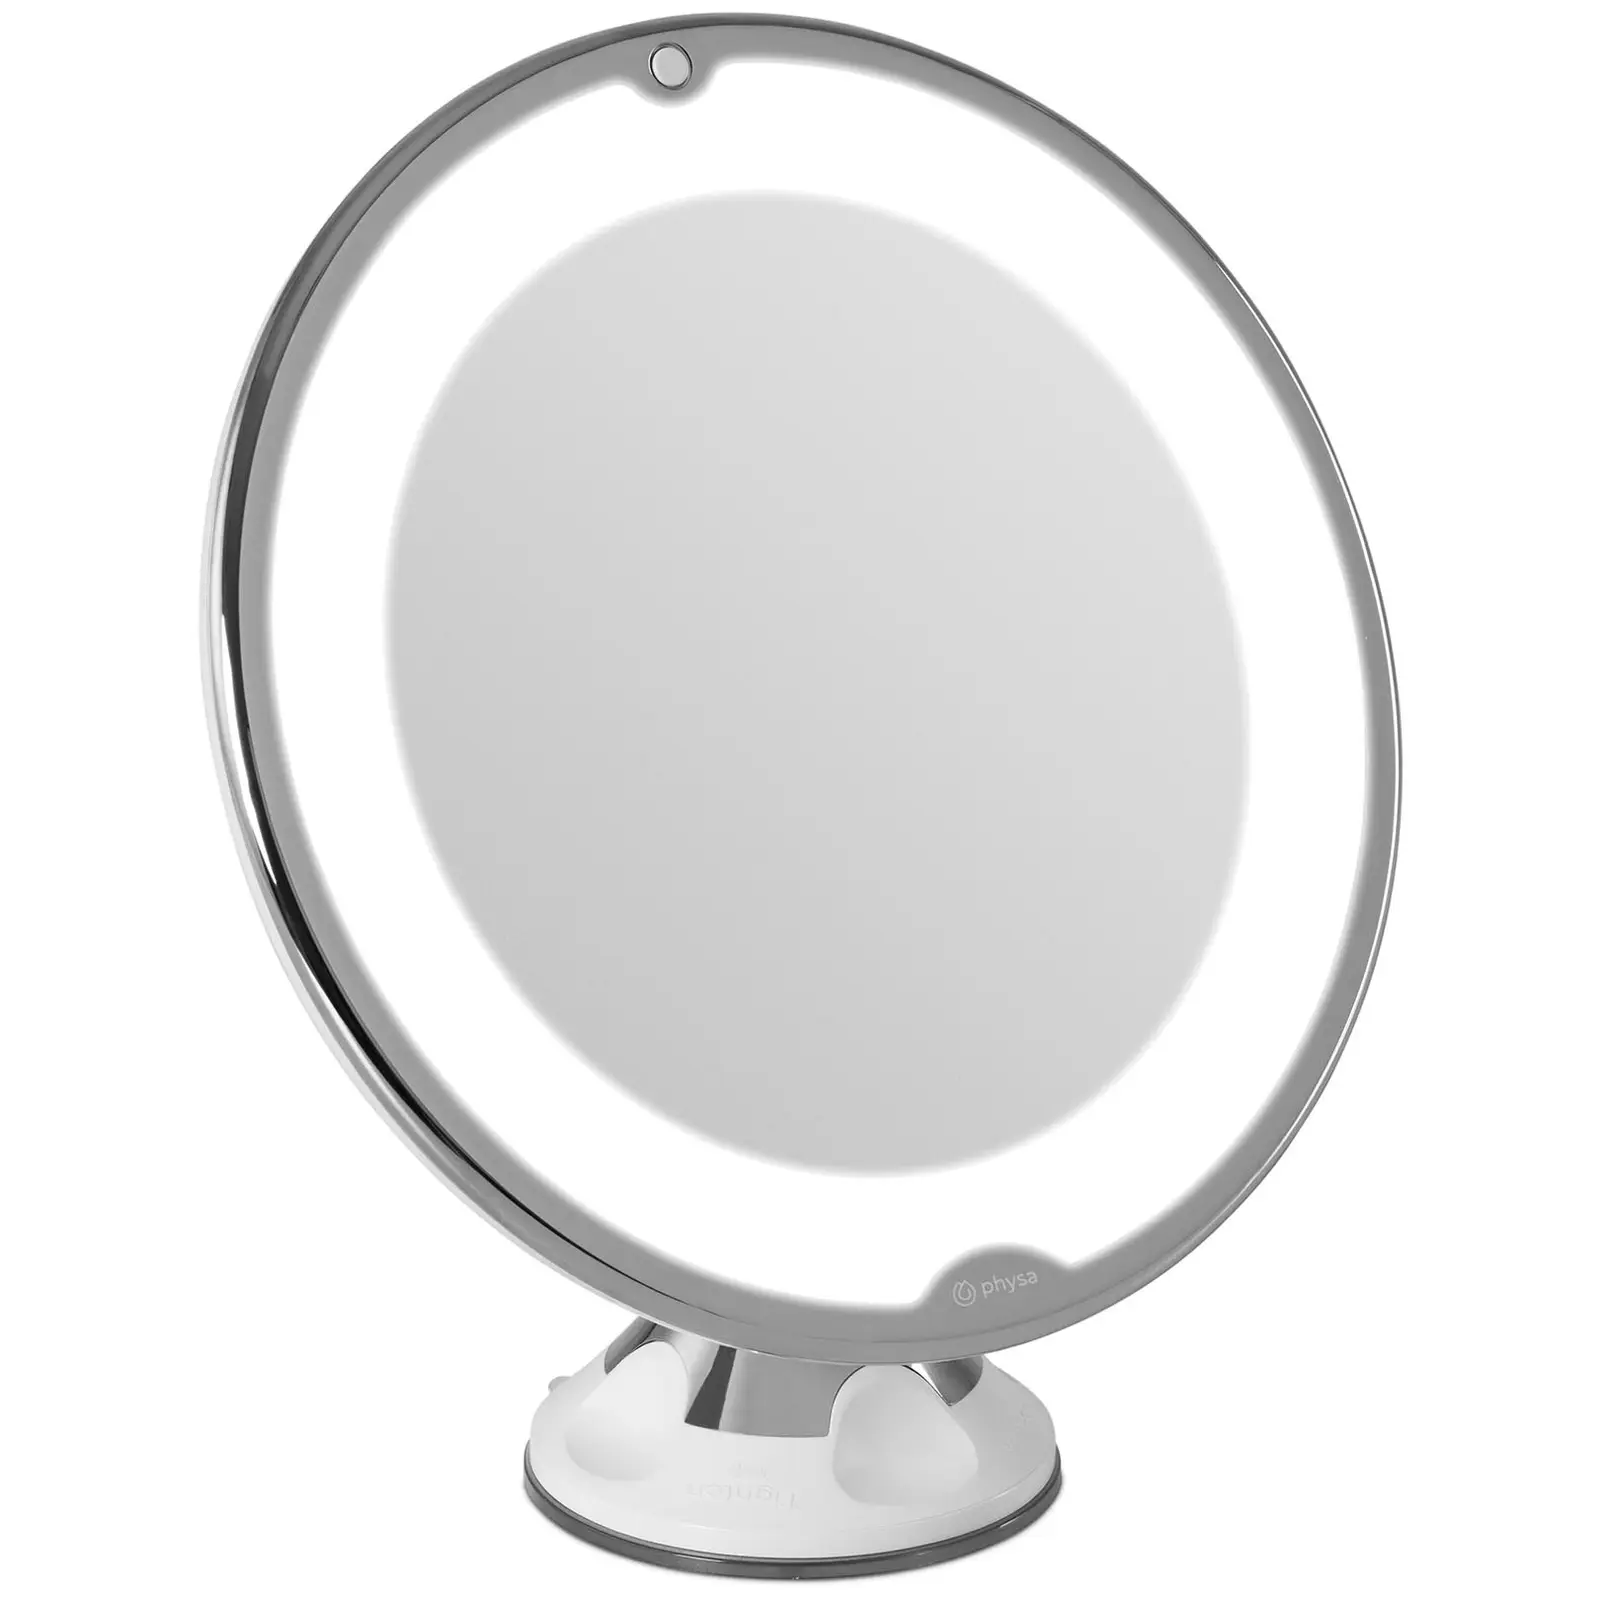 S/O® Miroir grossissant avec LED Blanc Make Up miroir de maquillage miroir avec éclairage variable Miroir sur pied salle de bain Miroir Miroir Miroir cosmétique 